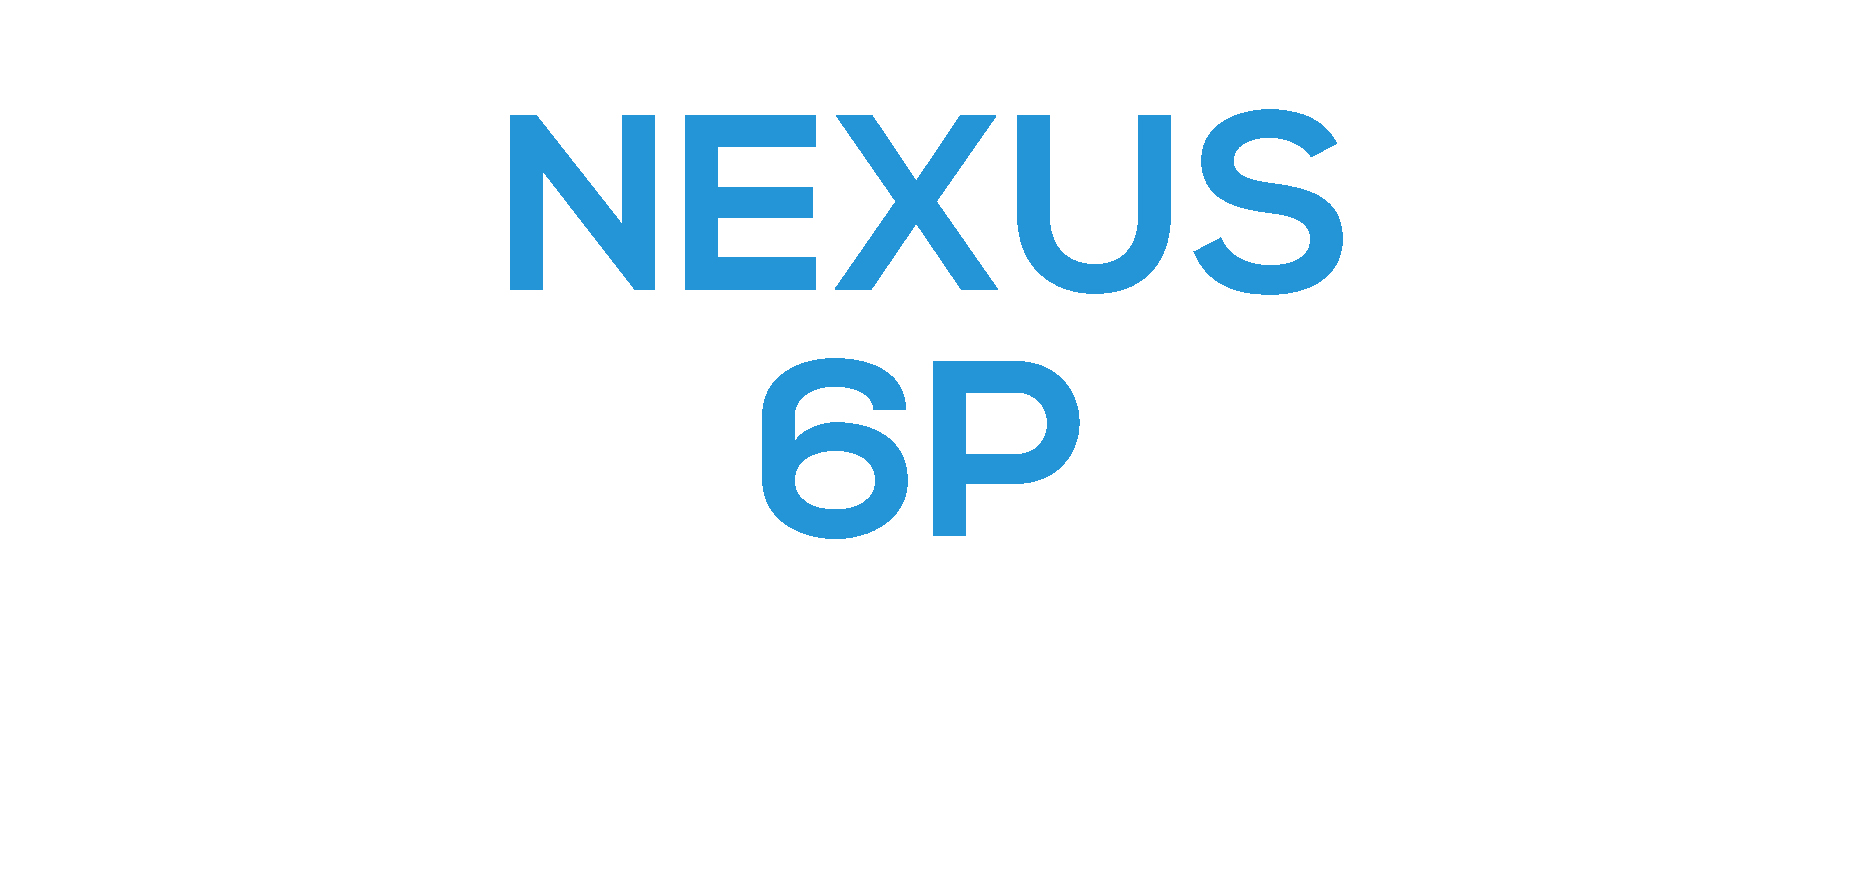 NEXUS 6P